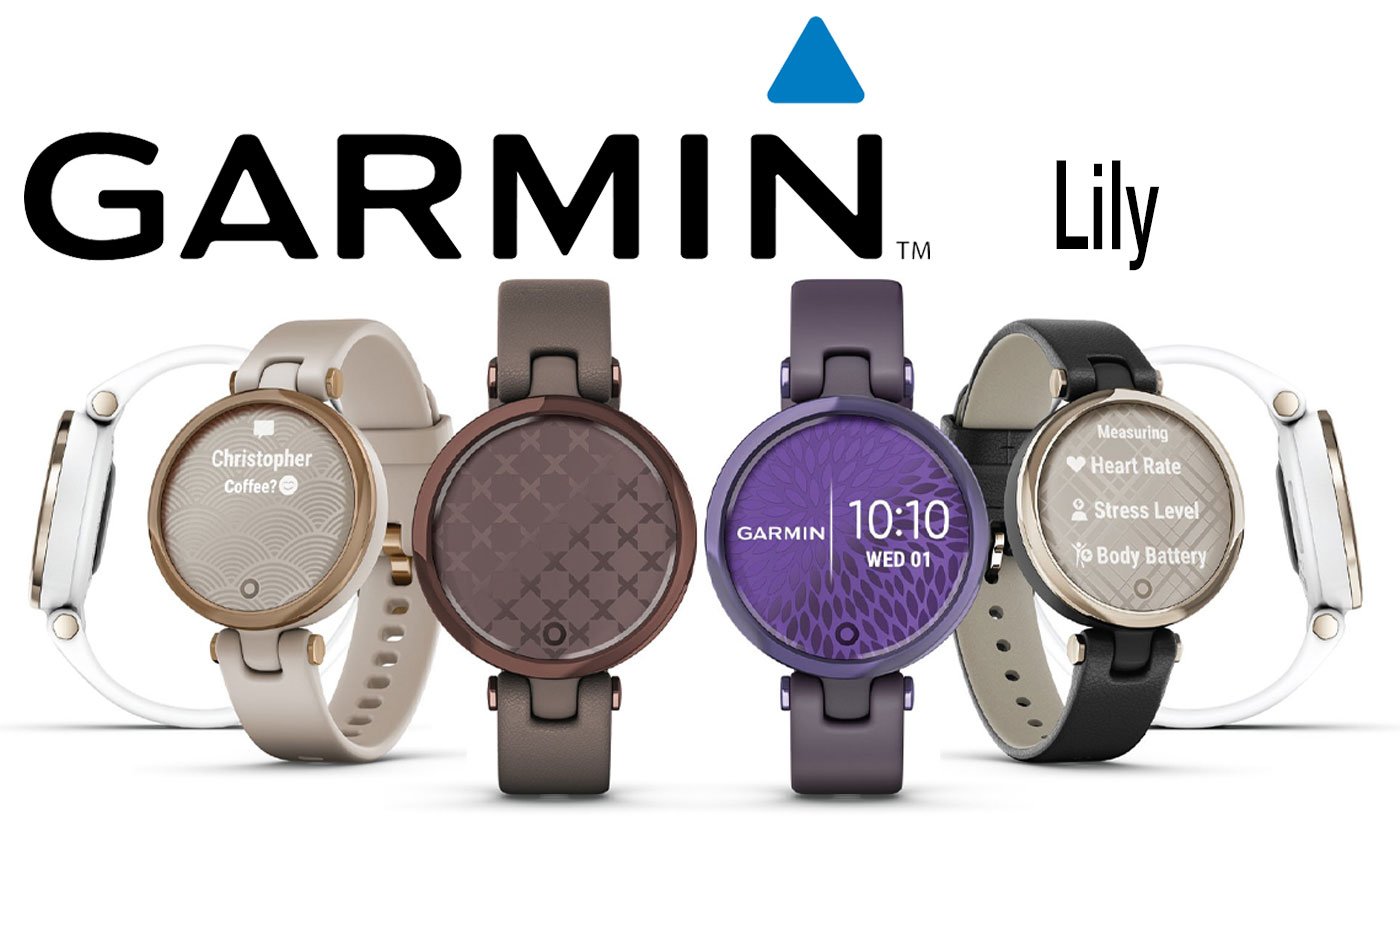 Garmin Lily, un smartwatch de tamaño reducido orientado para el